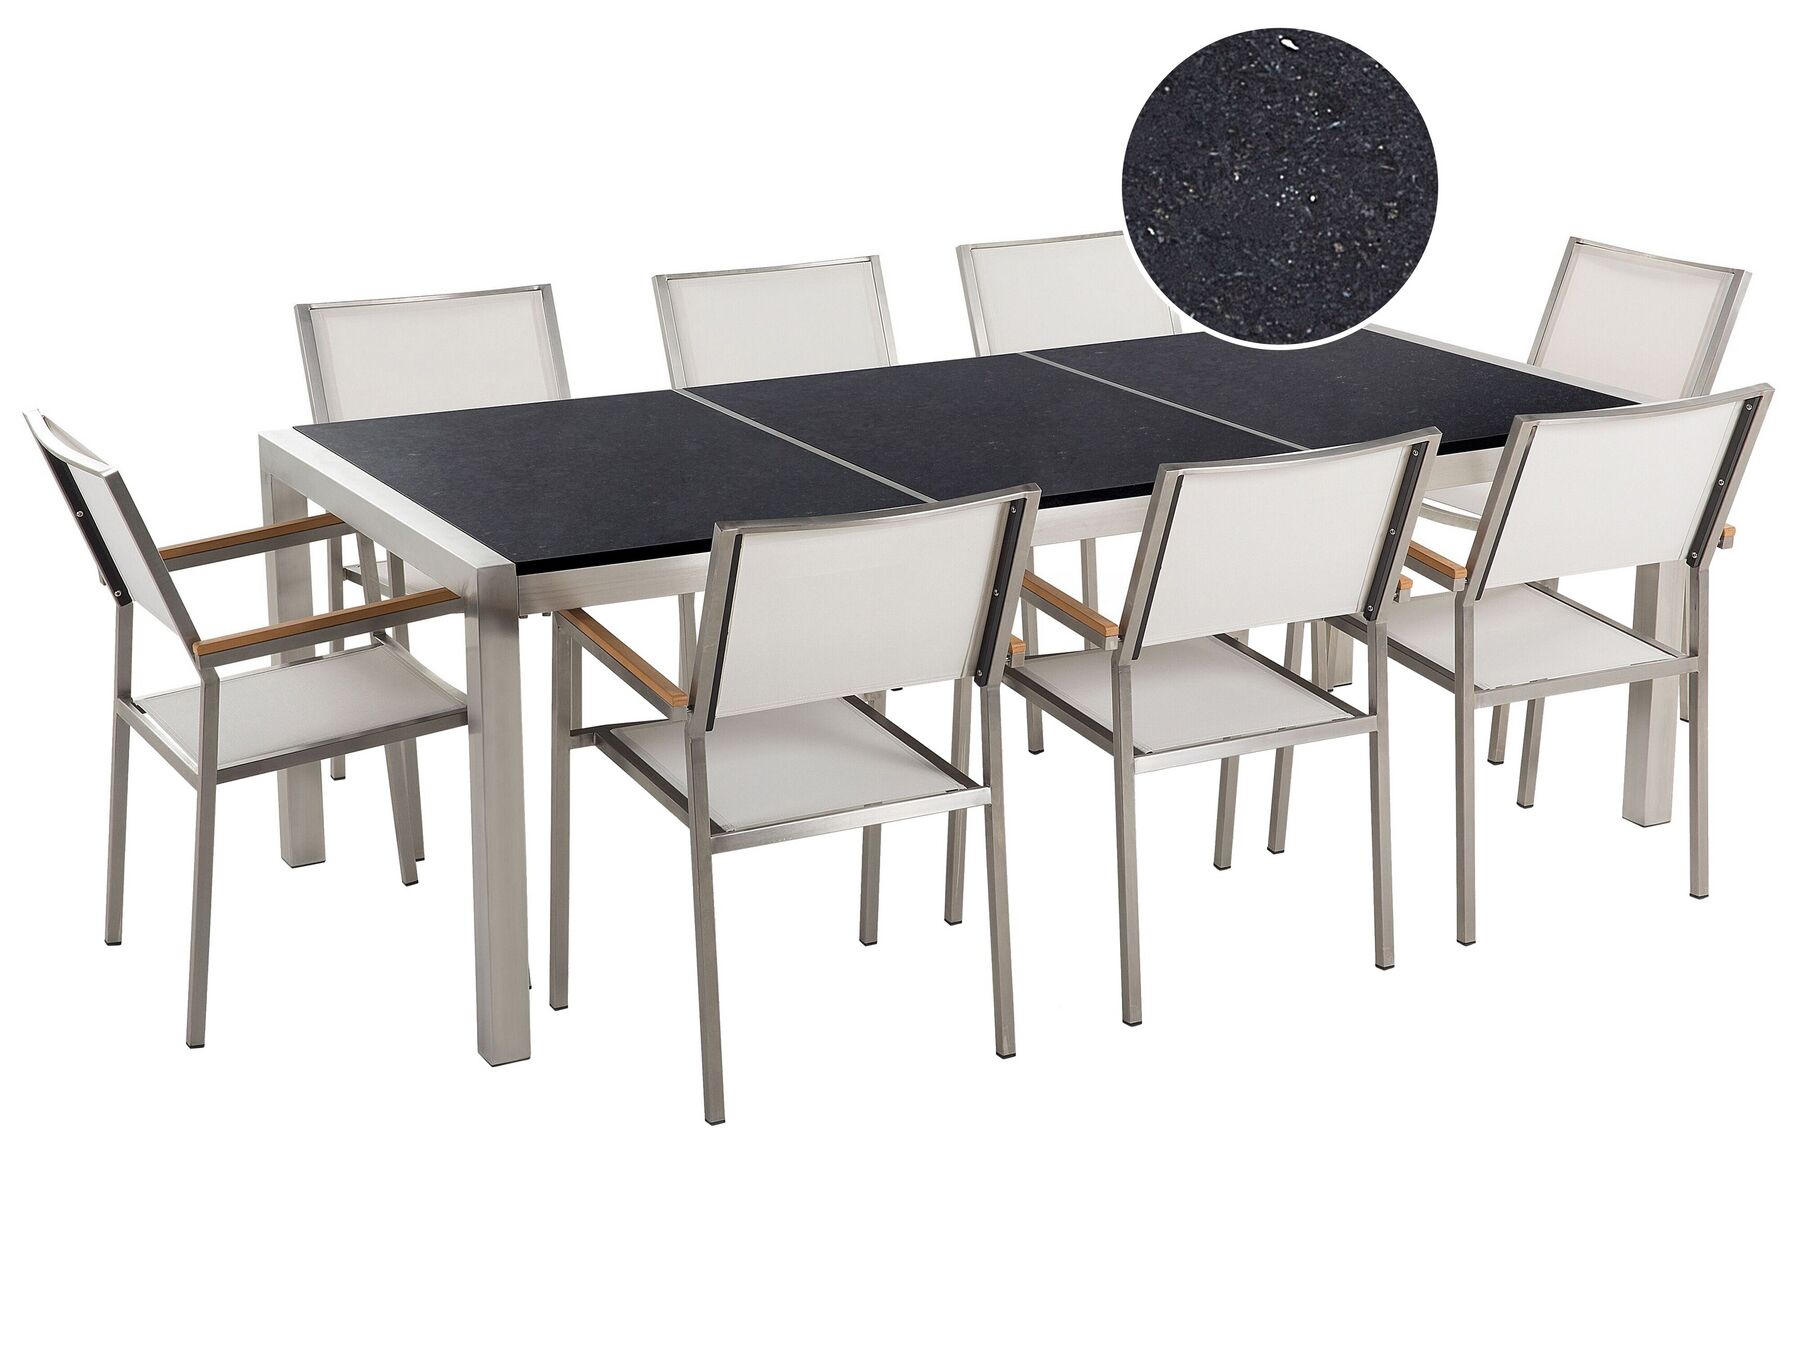 Nyolcszemélyes fekete osztott asztallapú étkezőasztal fehér textilén székekkel GROSSETO_378491